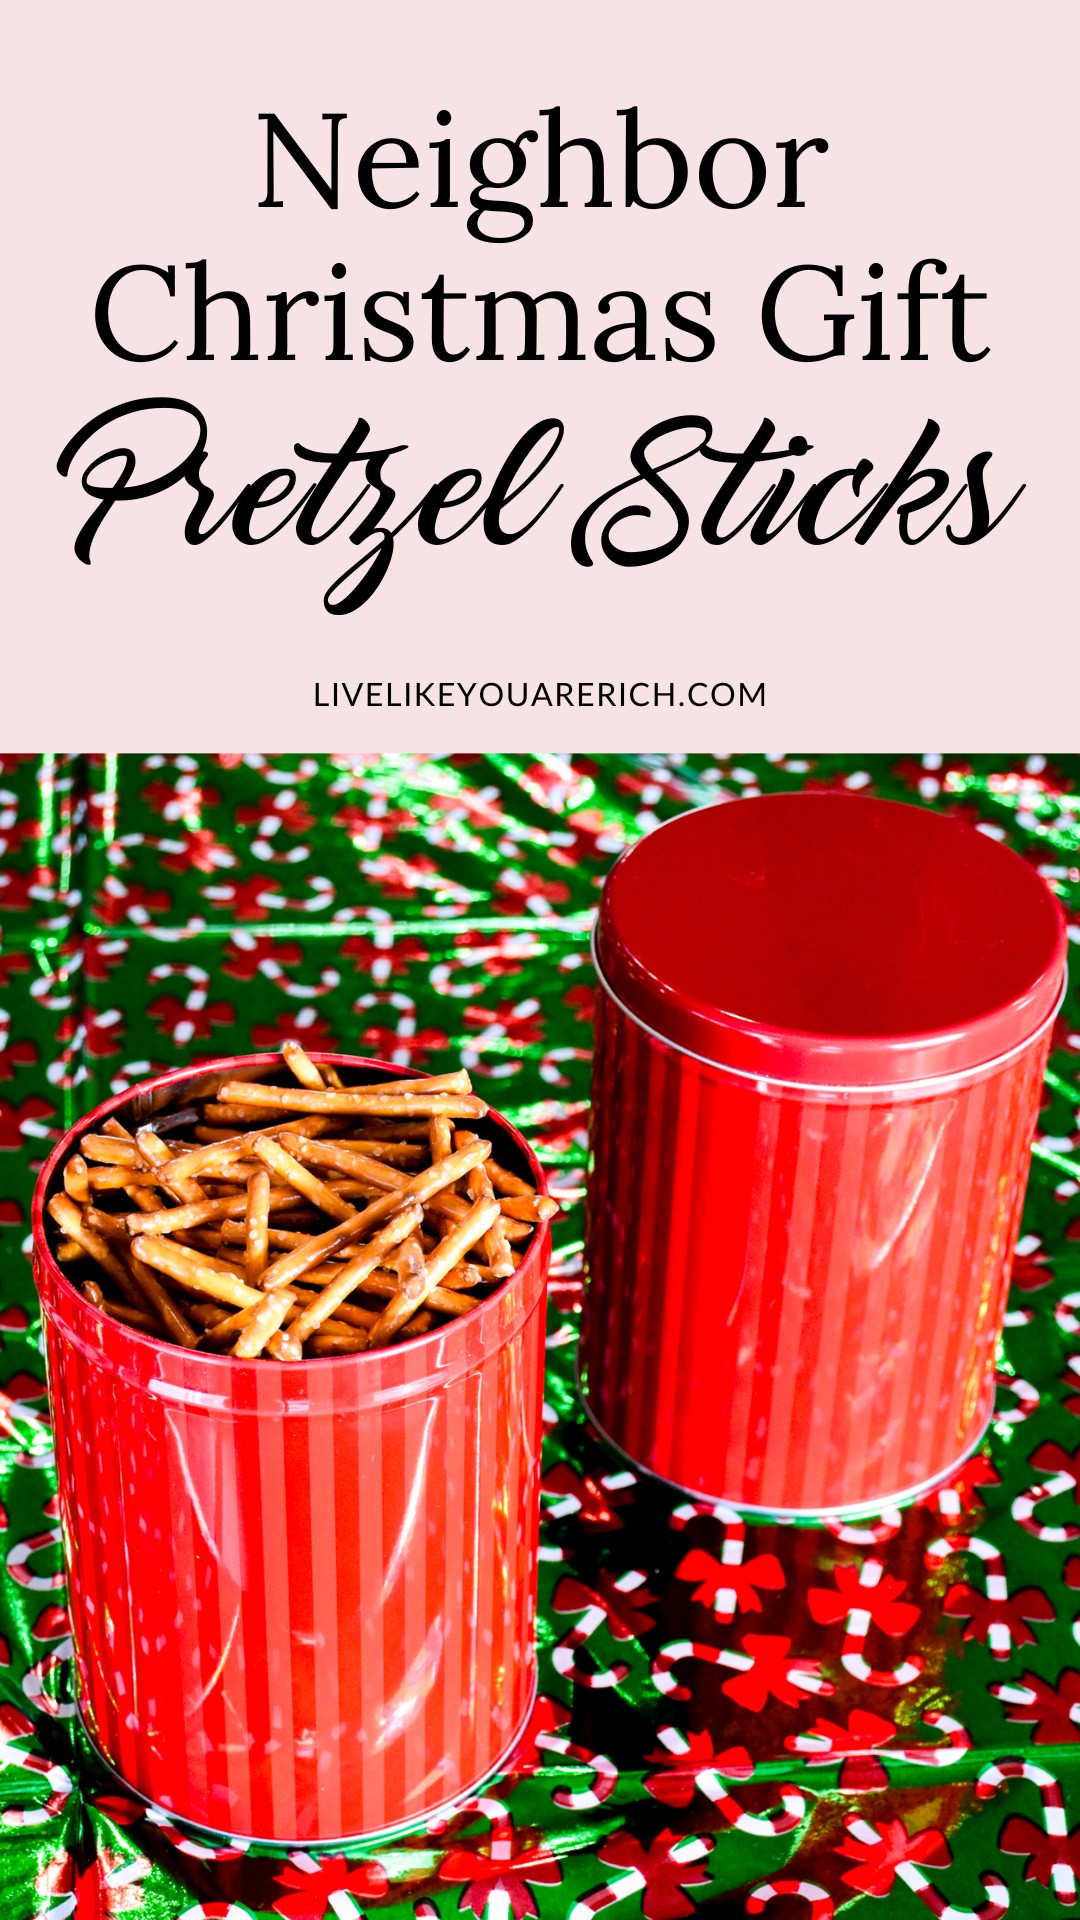 Neighbor Christmas Gift: Pretzel Sticks